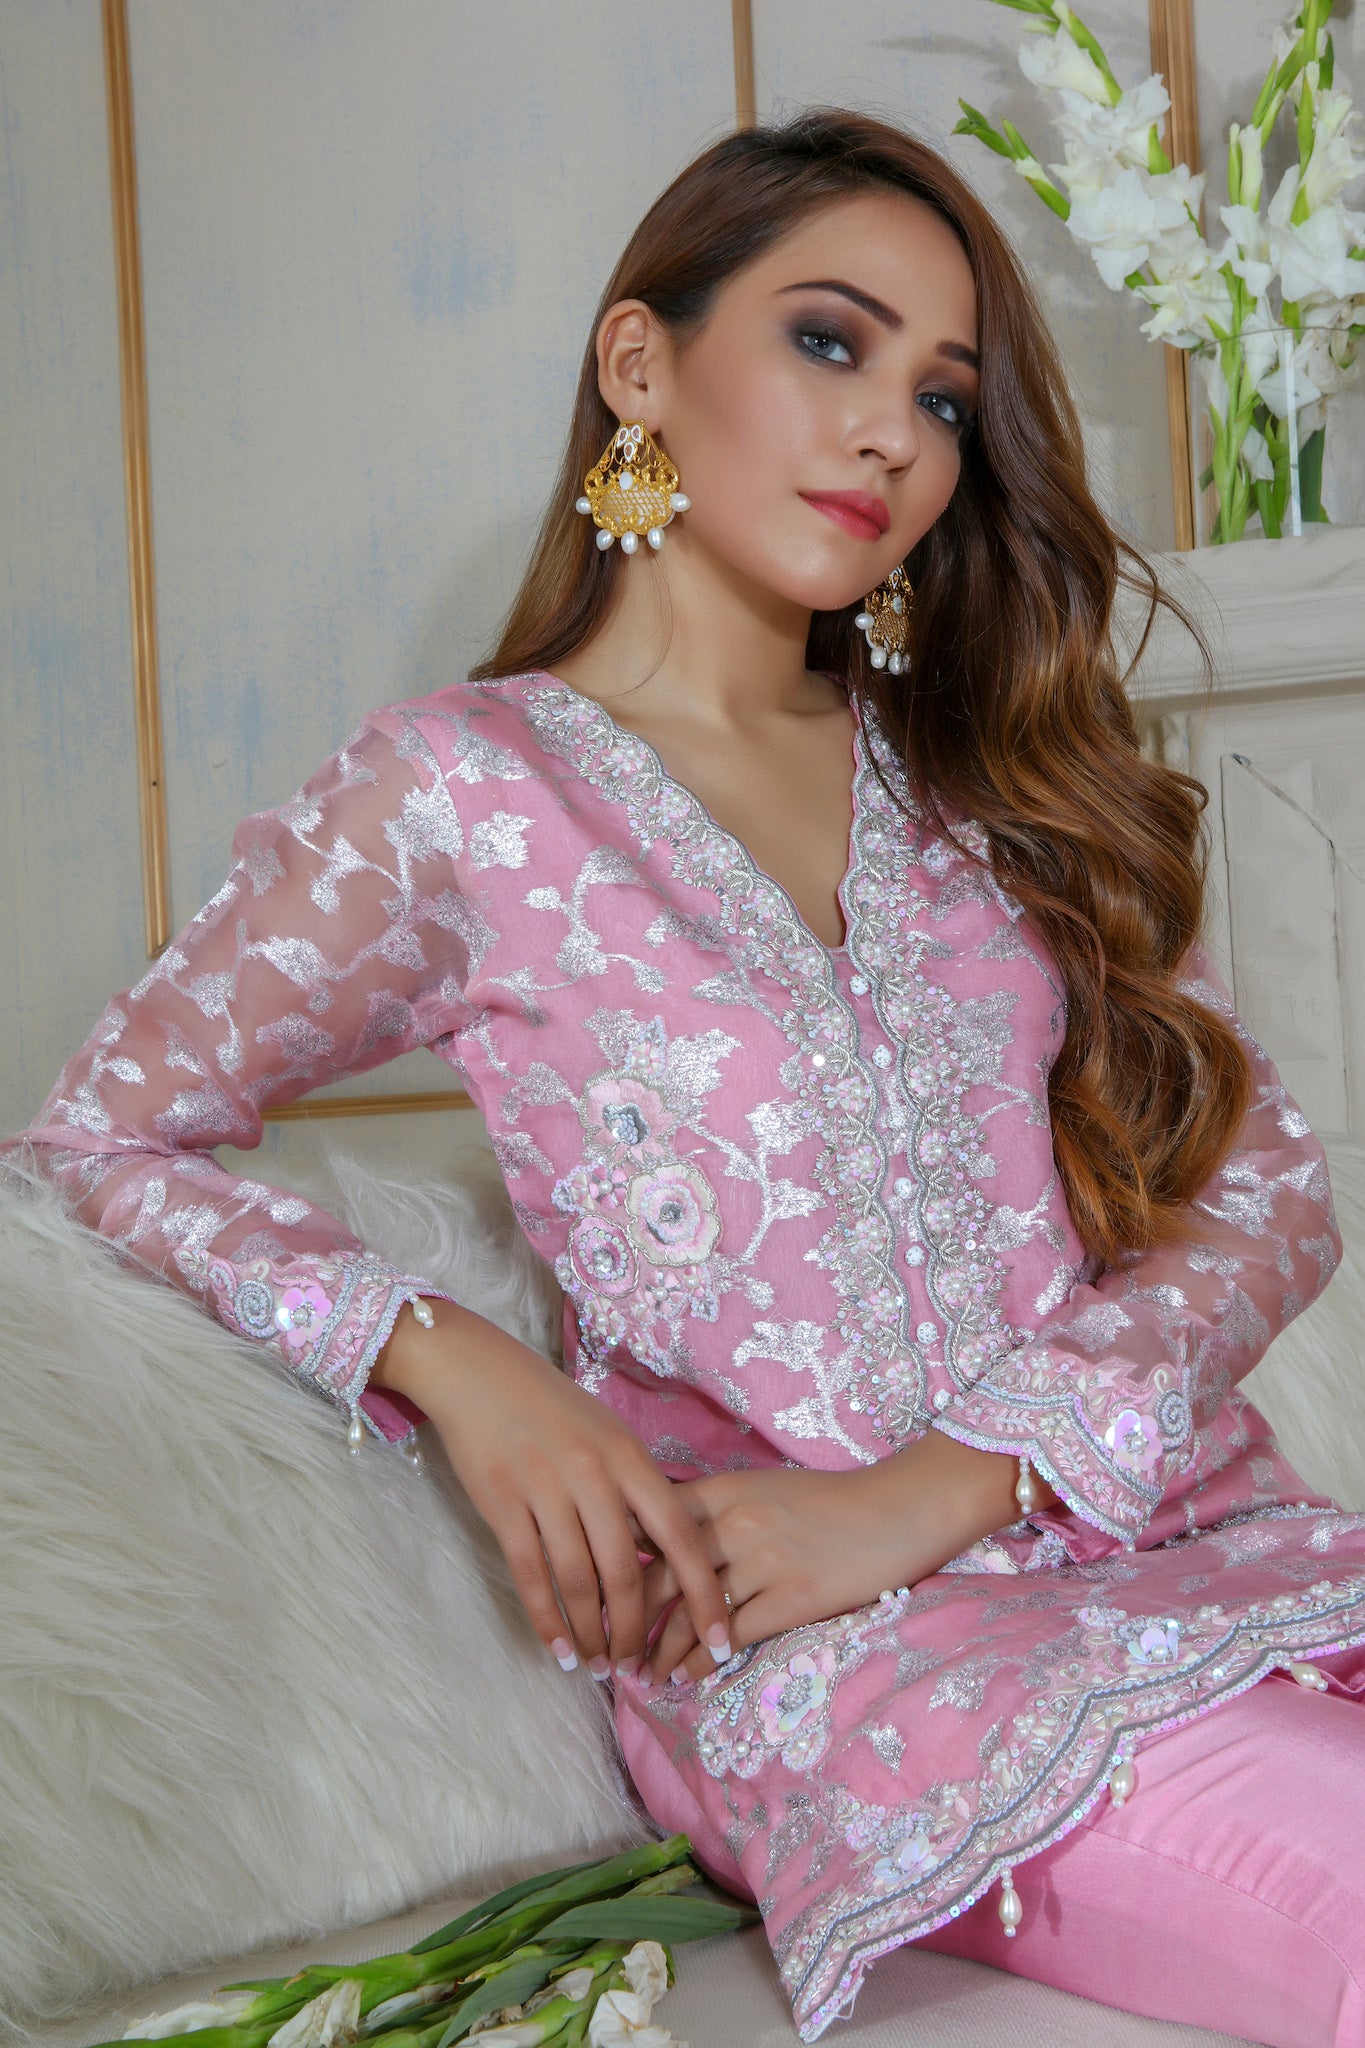 Carnation Pink | Pakistani Designer Outfit | Sarosh Salman